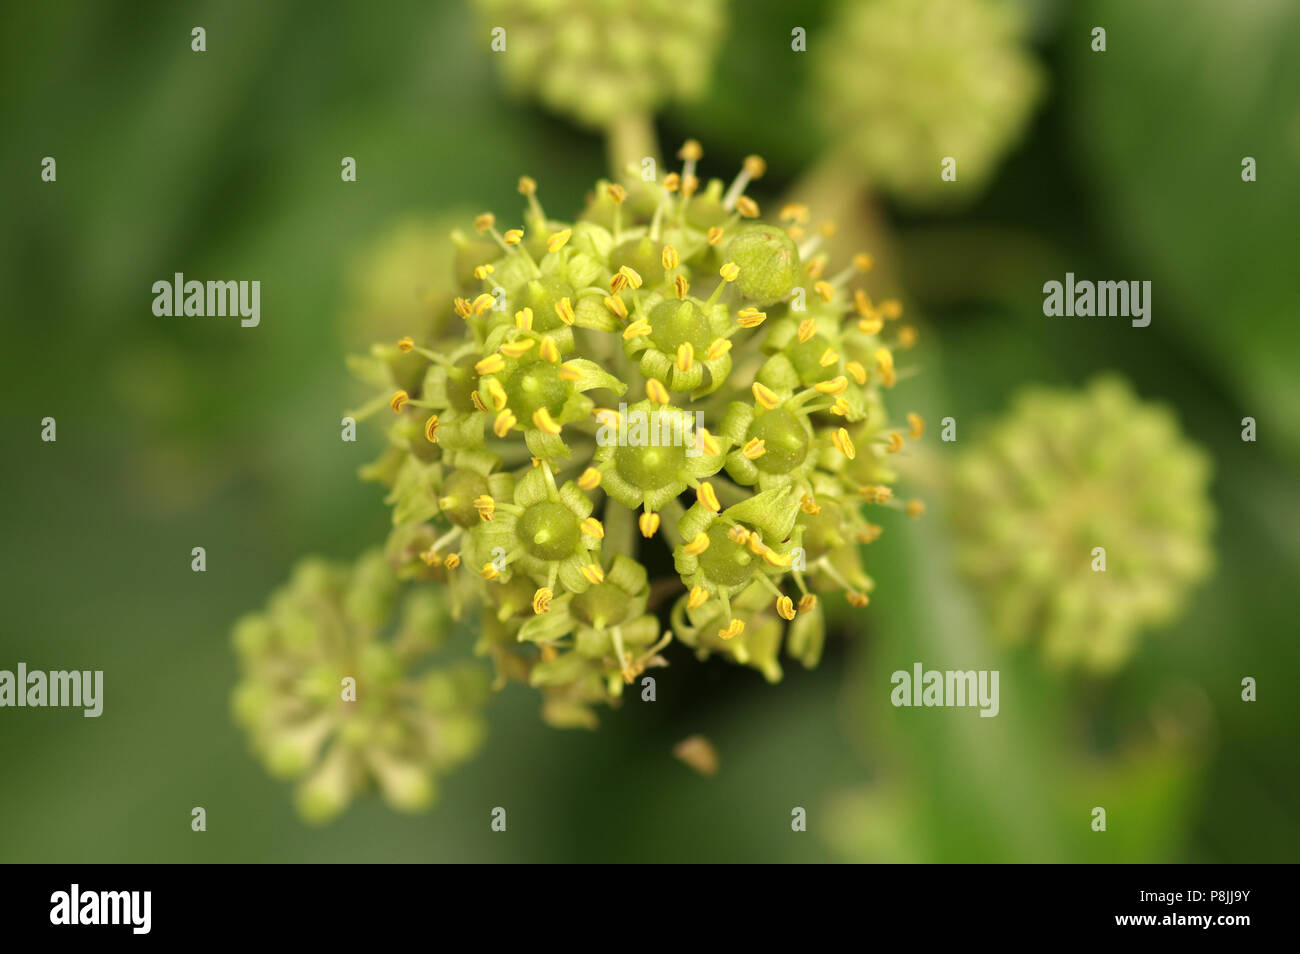 Flowering common ivy Stock Photo - Alamy